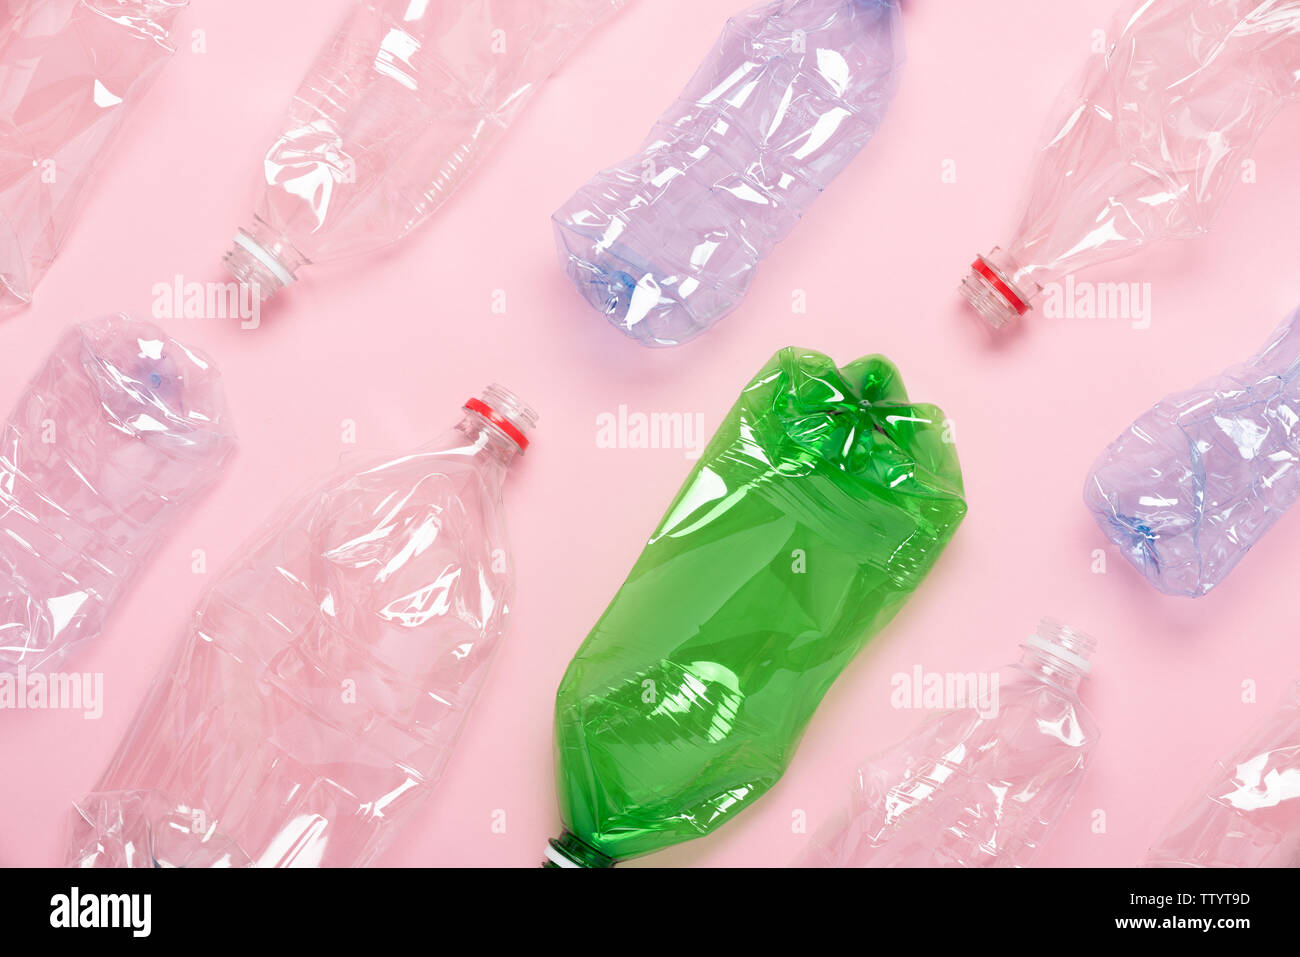 Les bouteilles en plastique sur fond rose vue d'en haut. Concept de recyclage du plastique. Banque D'Images